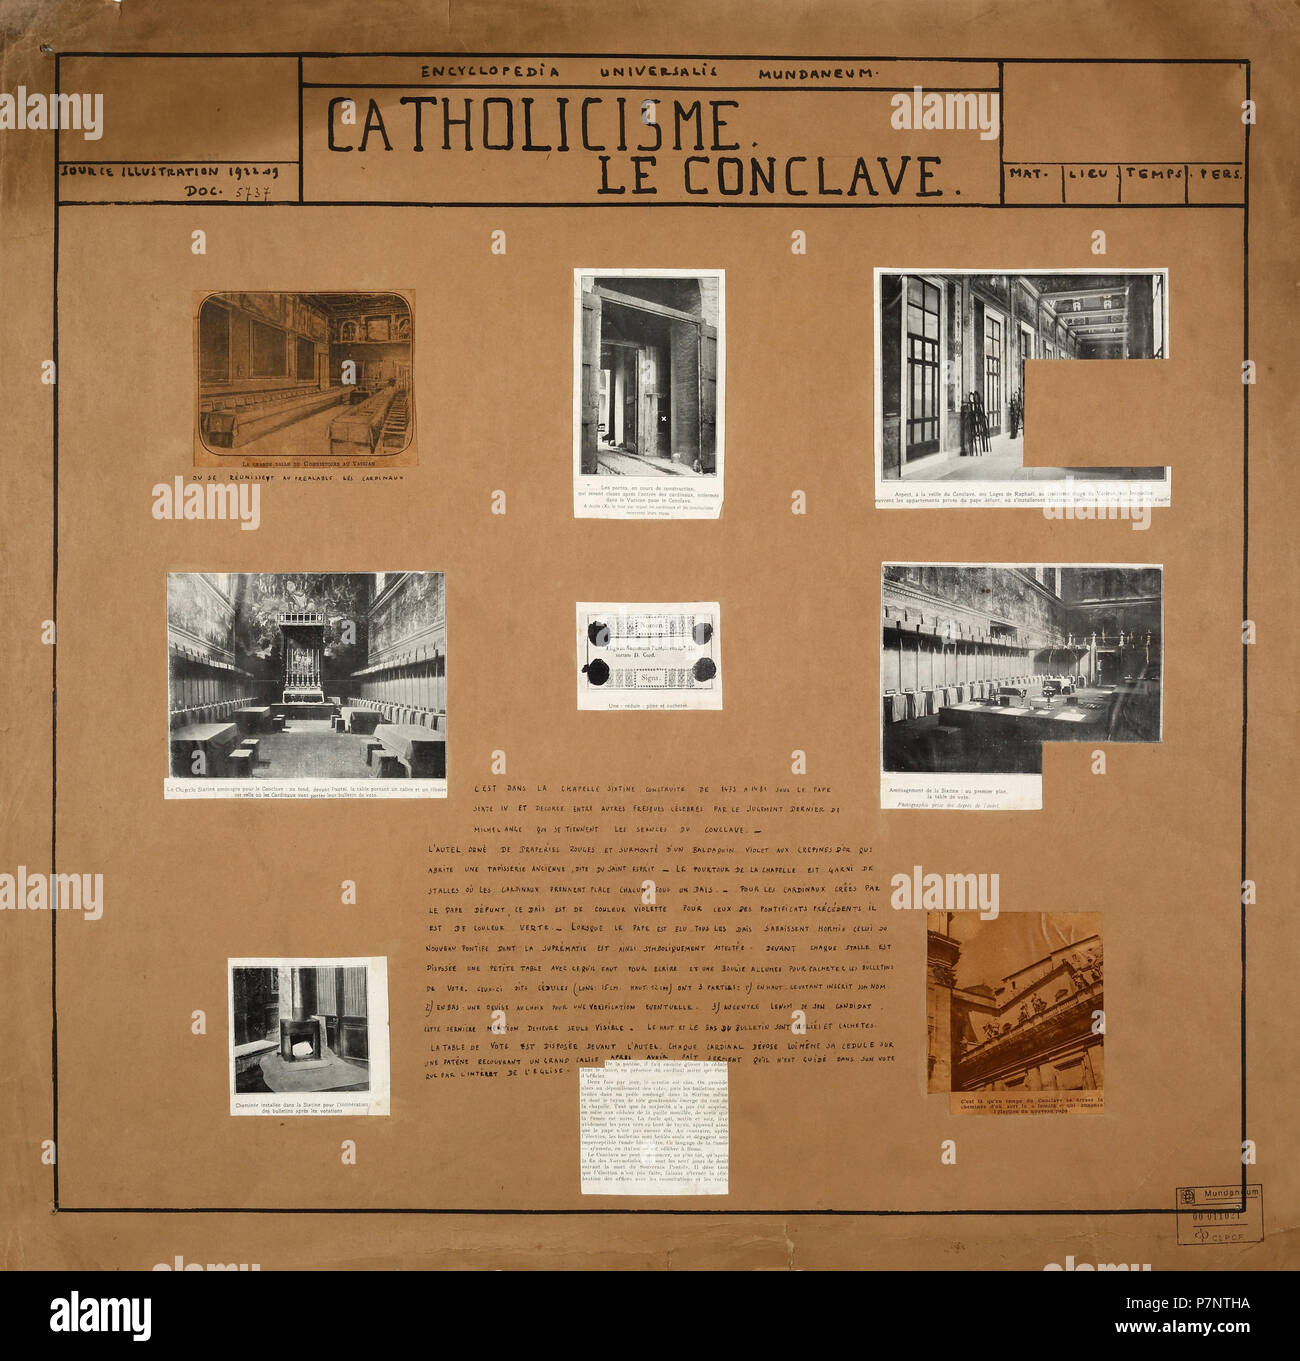 Français : Planche de l'Encyclopaedia Universalis Mundaneum . 1920 63 Catholicisme. Le conclave Stock Photo